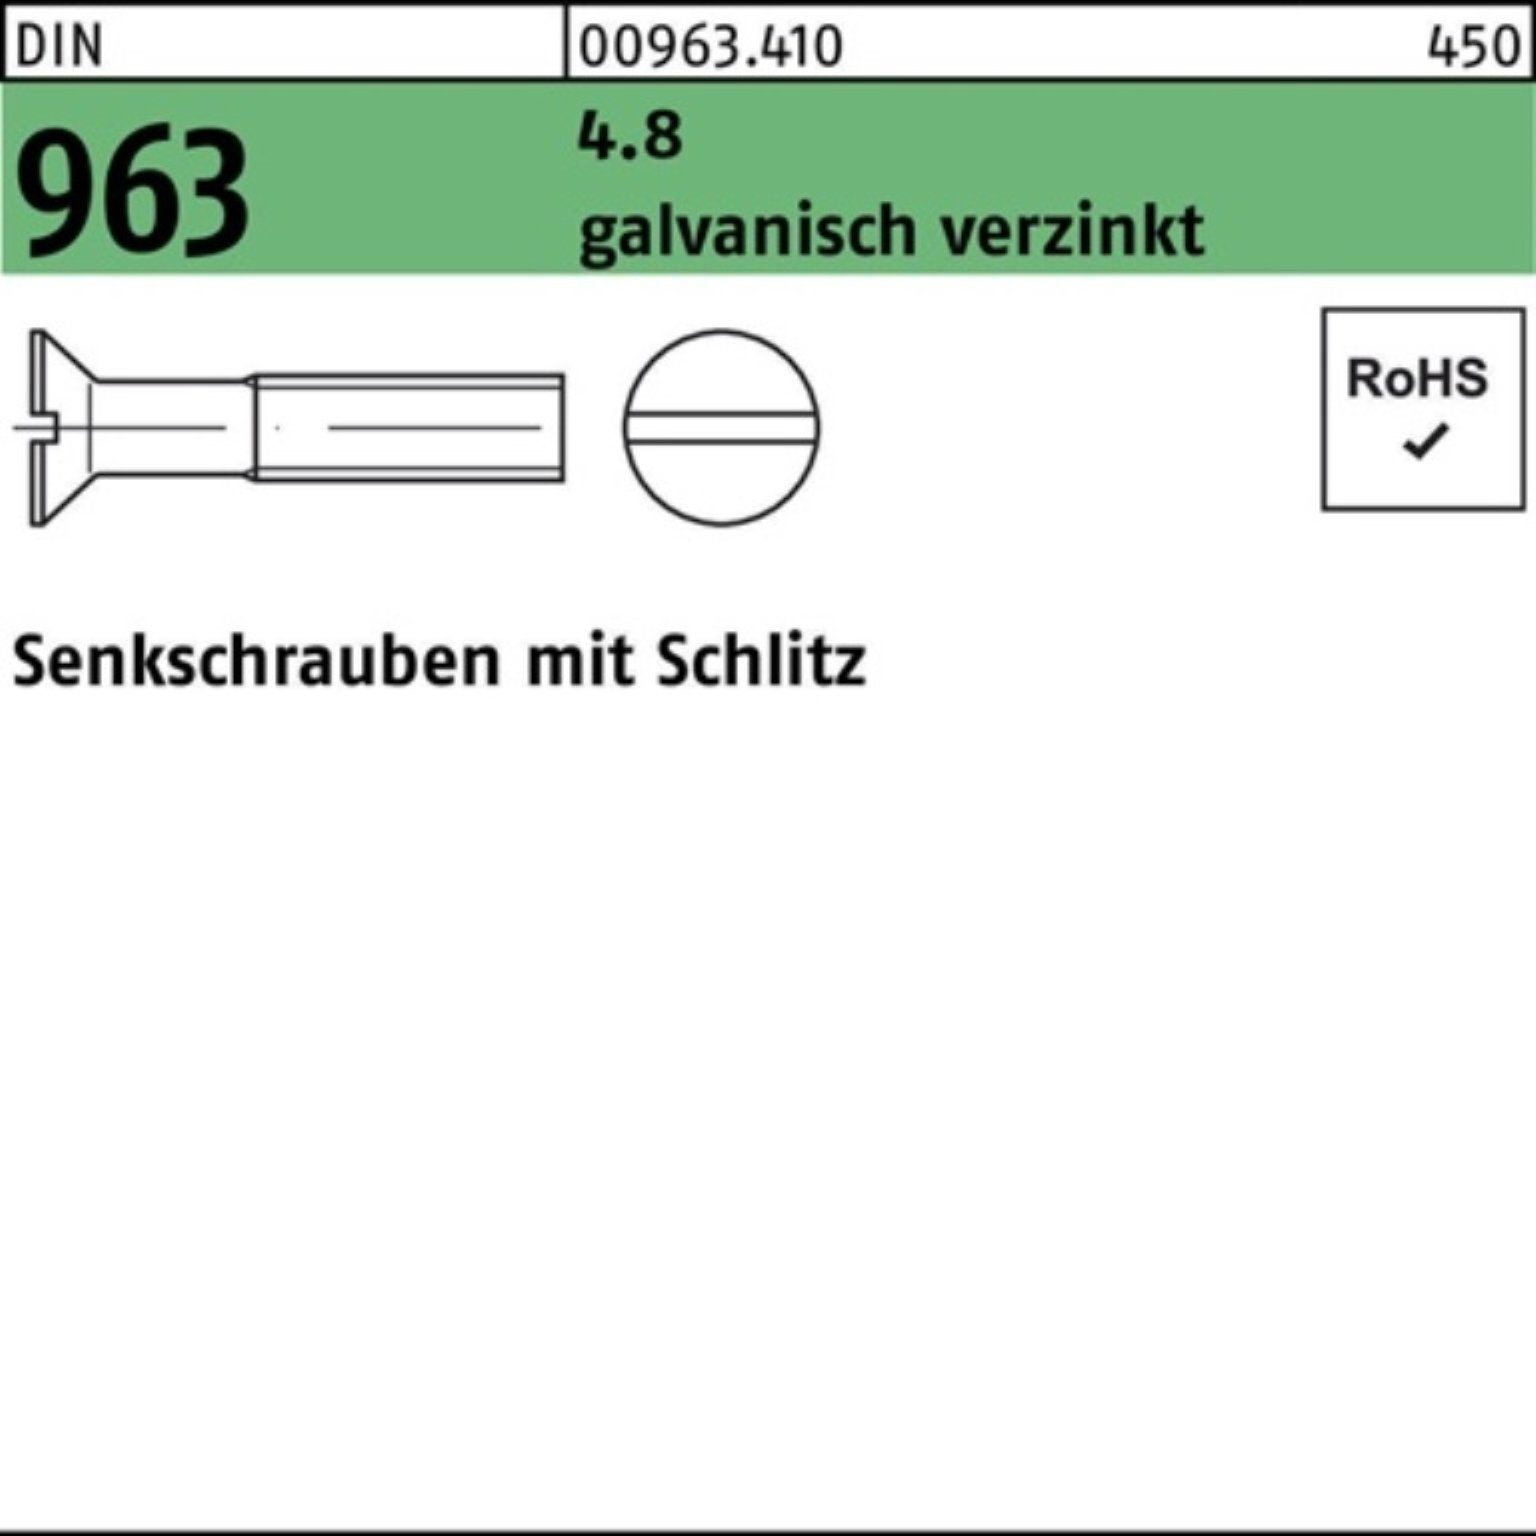 M3x Reyher 4.8 Pack 25 DIN St galv.verz. 963 2000 Senkschraube 2000er Senkschraube Schlitz